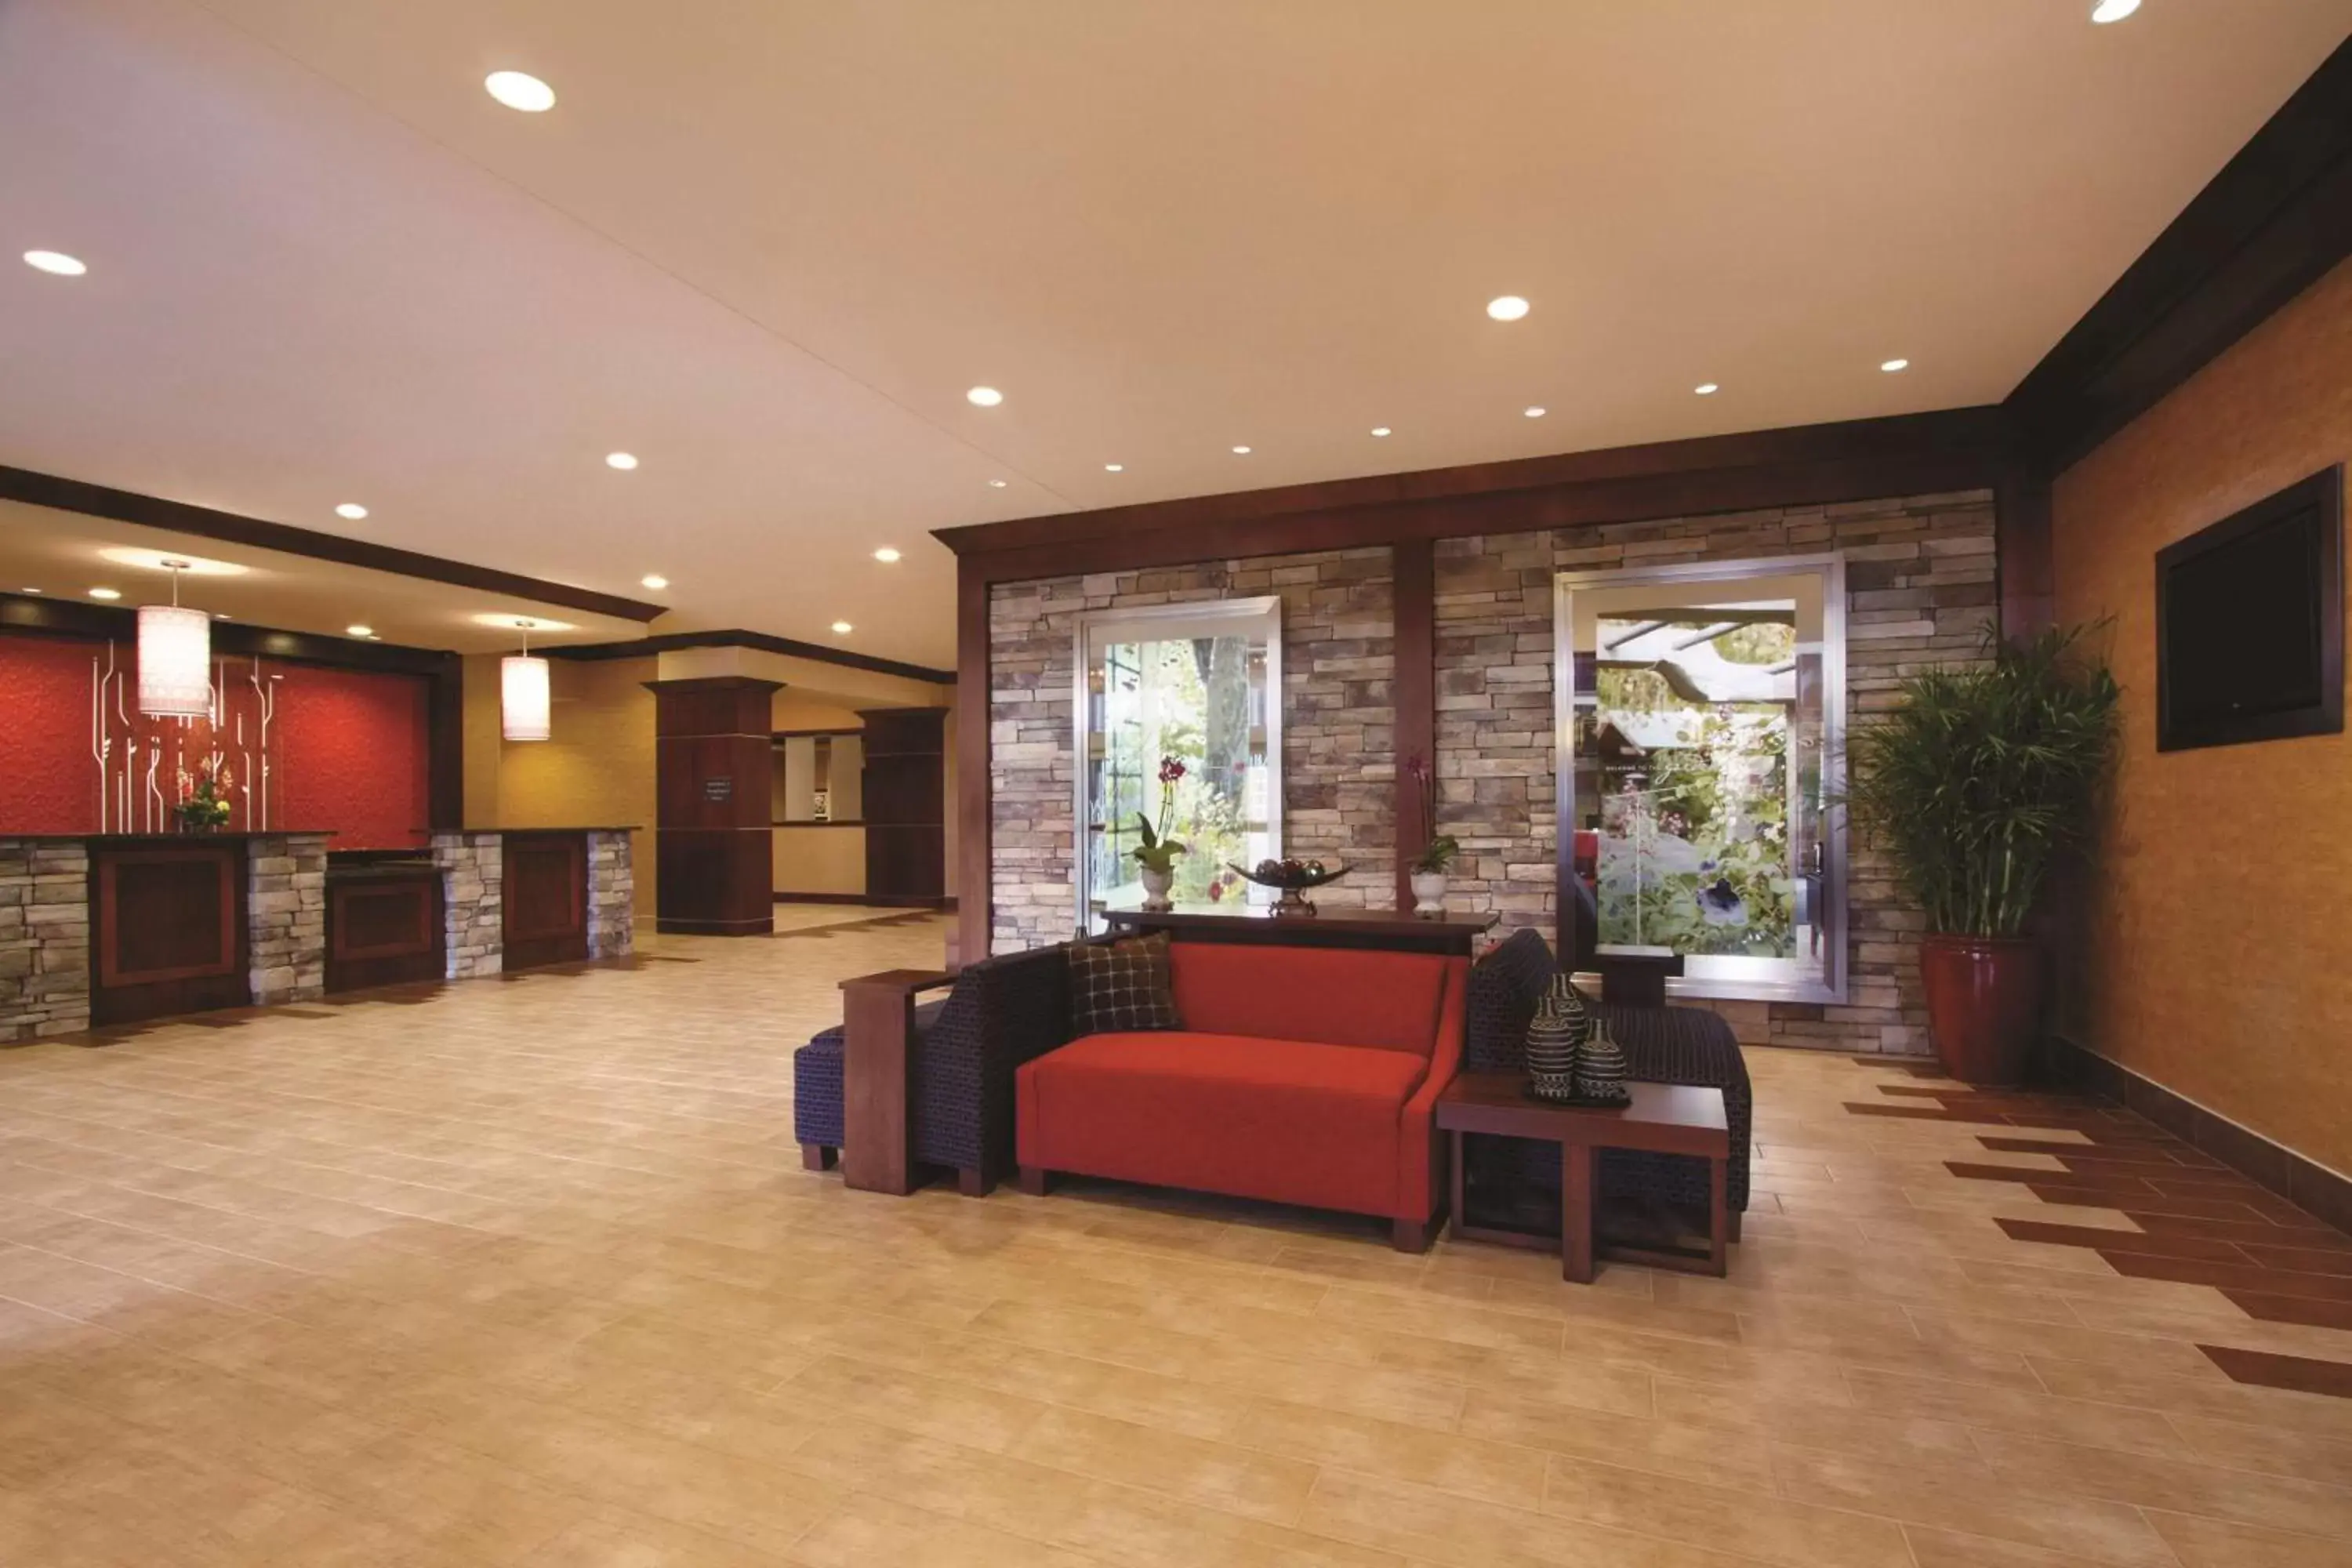 Lobby or reception, Lobby/Reception in Hilton Garden Inn Oklahoma City/Bricktown